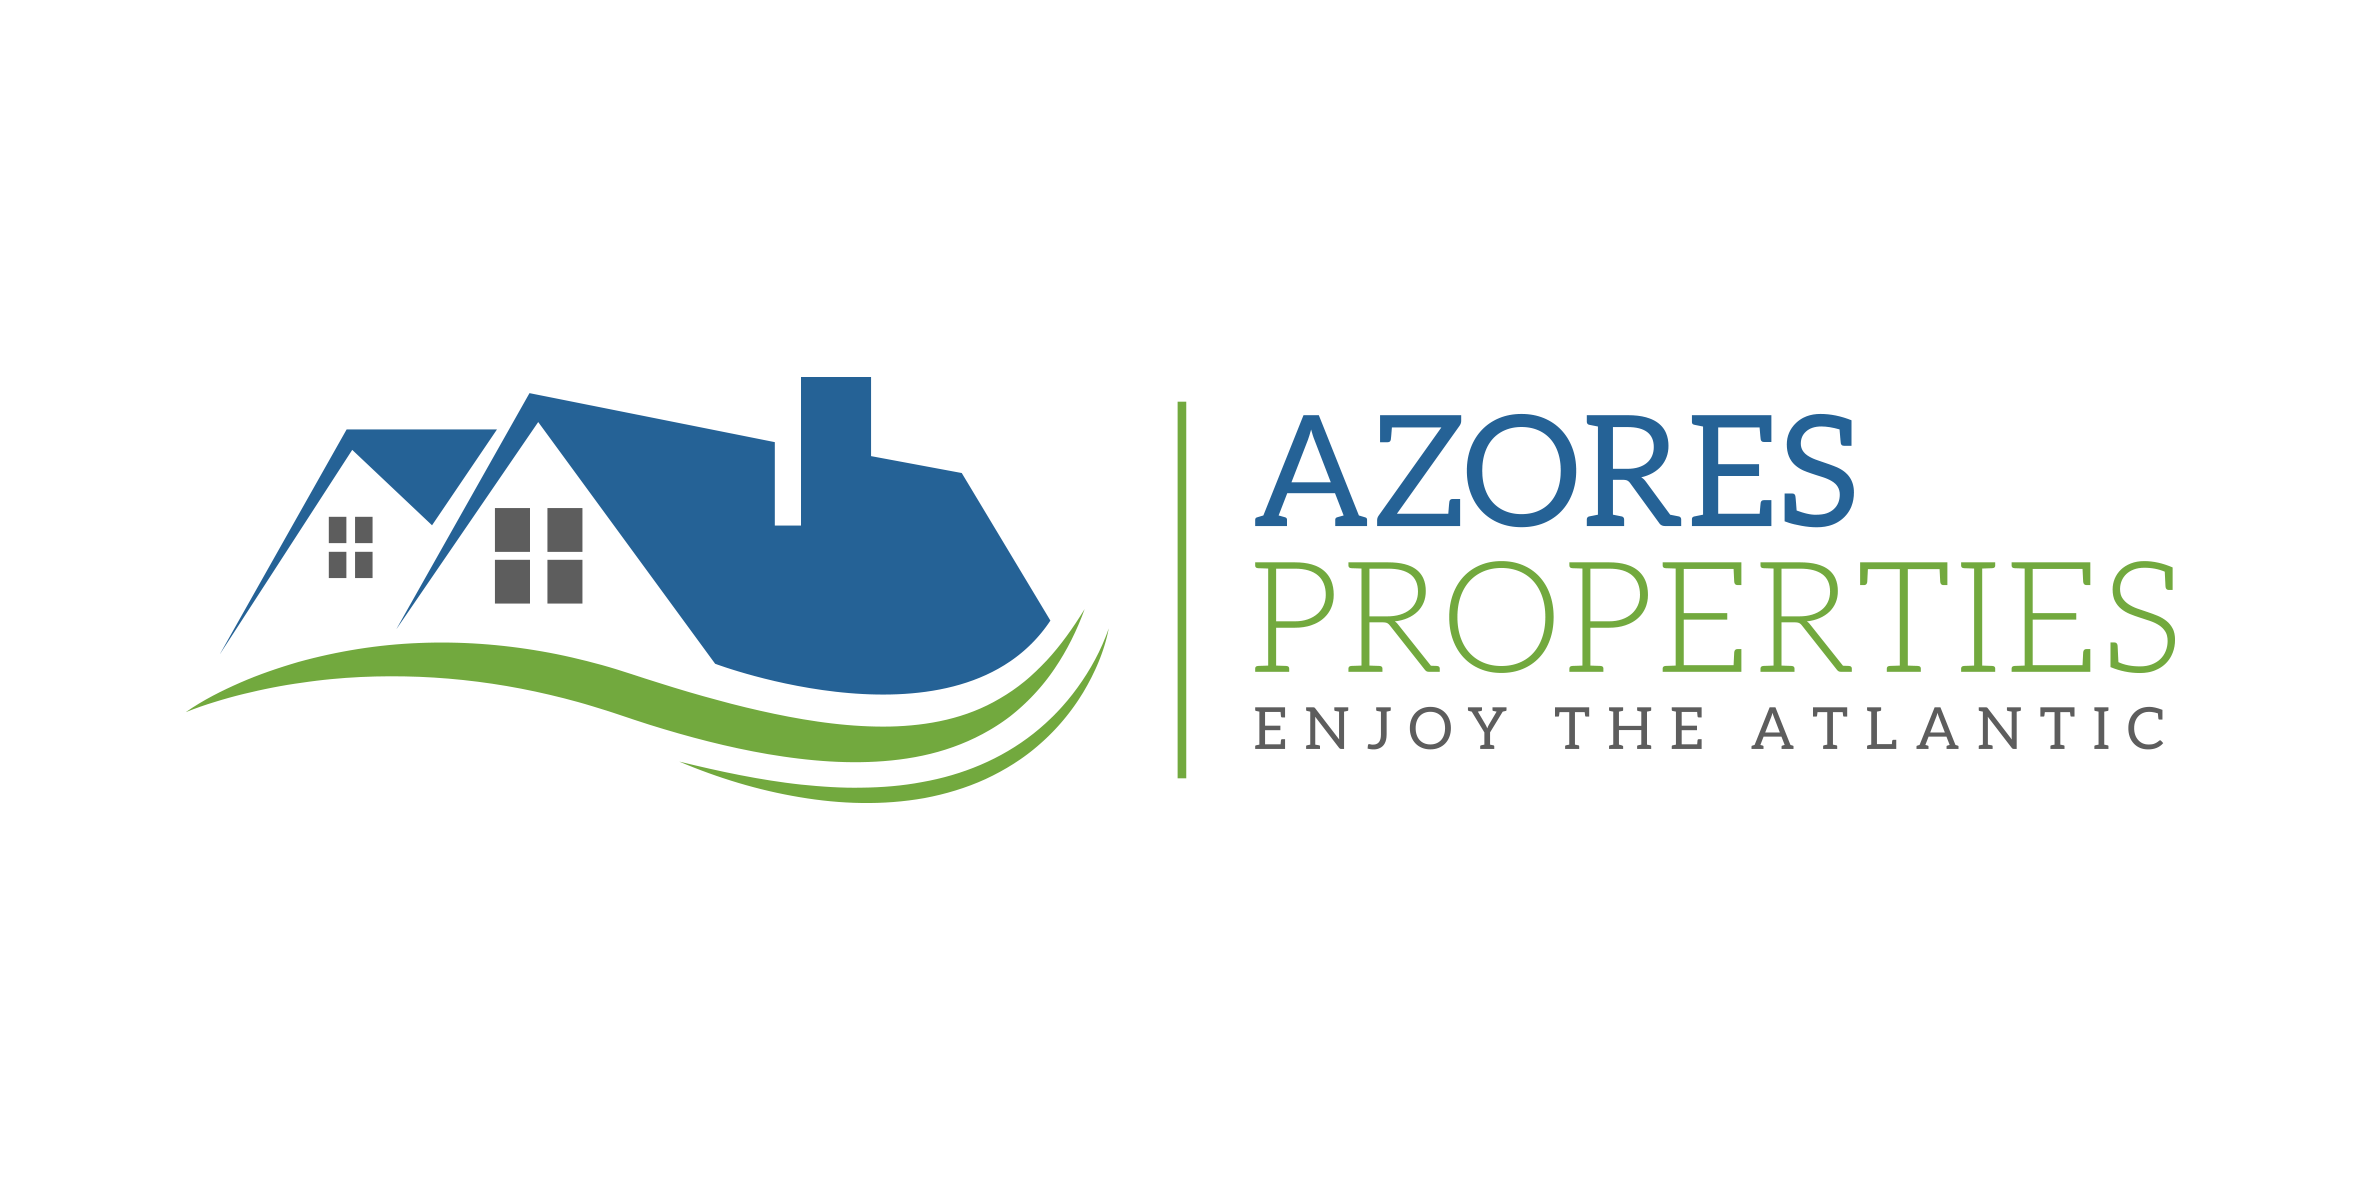 Azores Properties